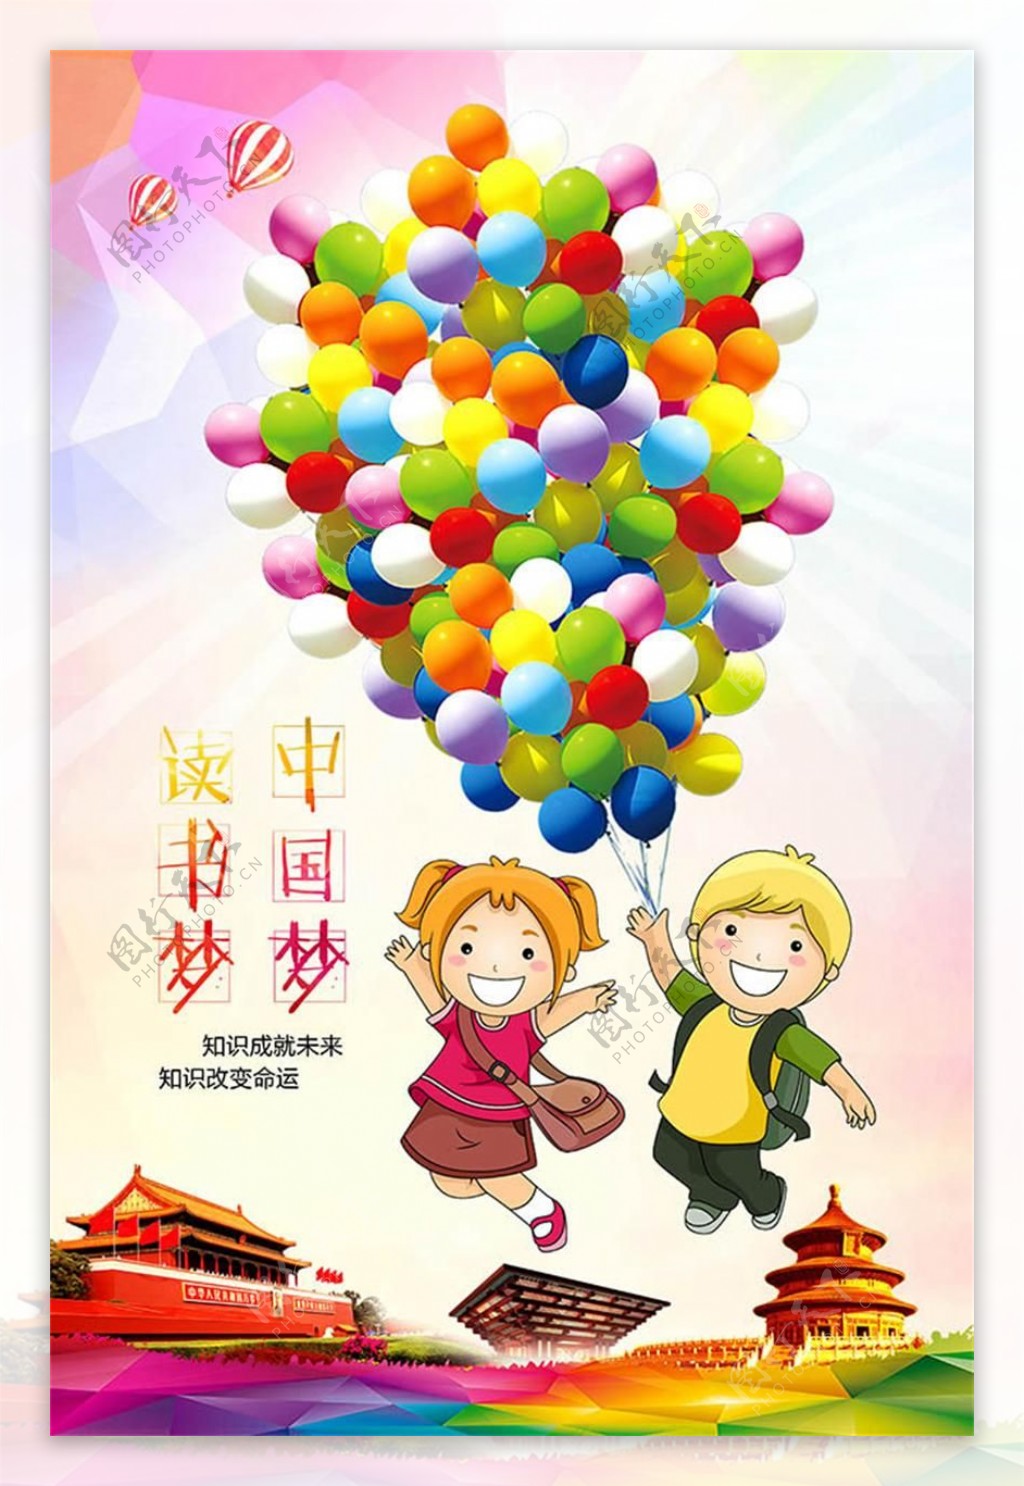 中国梦卡通主题公益海报设计psd素材